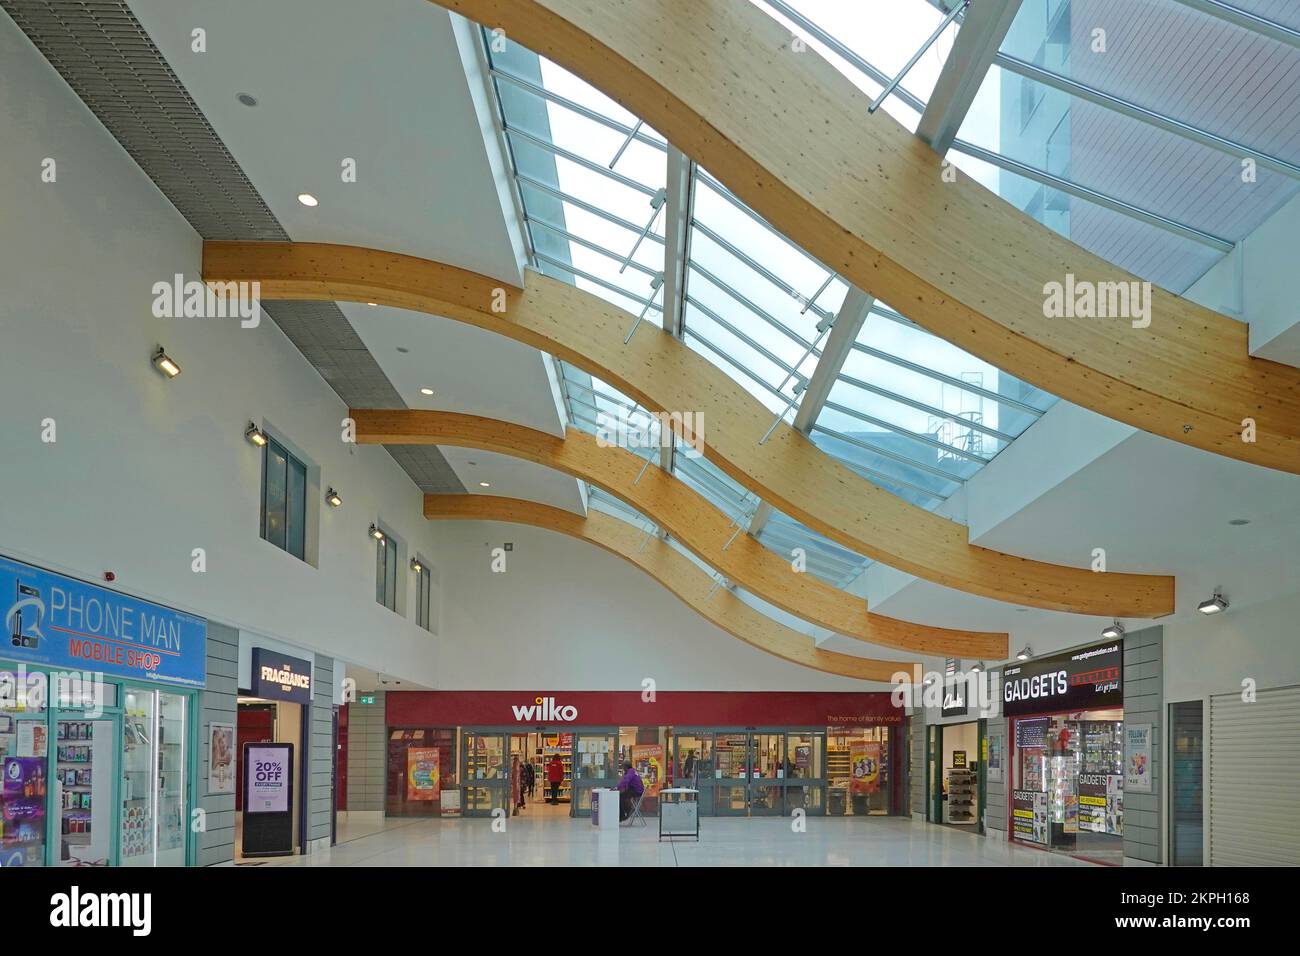 Dachbalken aus geschwungenem, glulambeschichtetem Holz, die das Glasdach eines modernen Einkaufszentrums in der Innenstadt stützen, Essex England UK Stockfoto